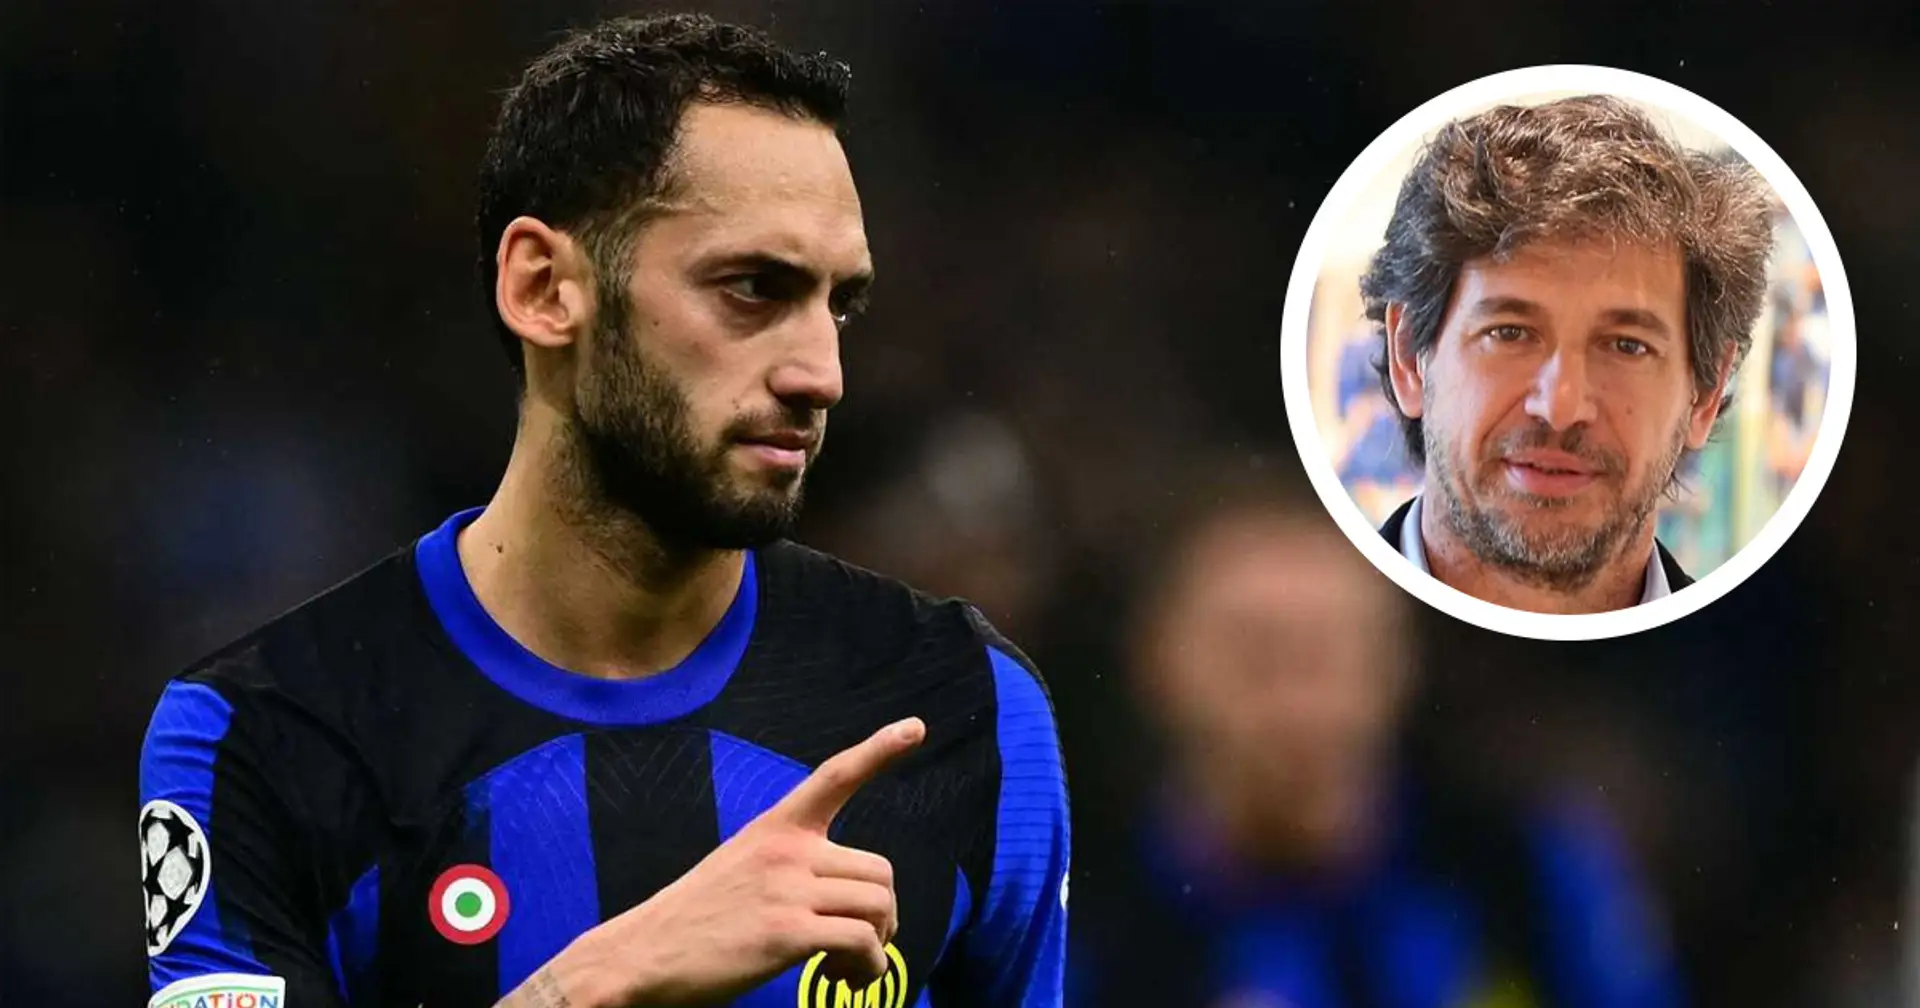 "Gli ho chiesto perchè l'Inter": Albertini svela un aneddoto su Calhanoglu e il suo rapporto con i milanisti